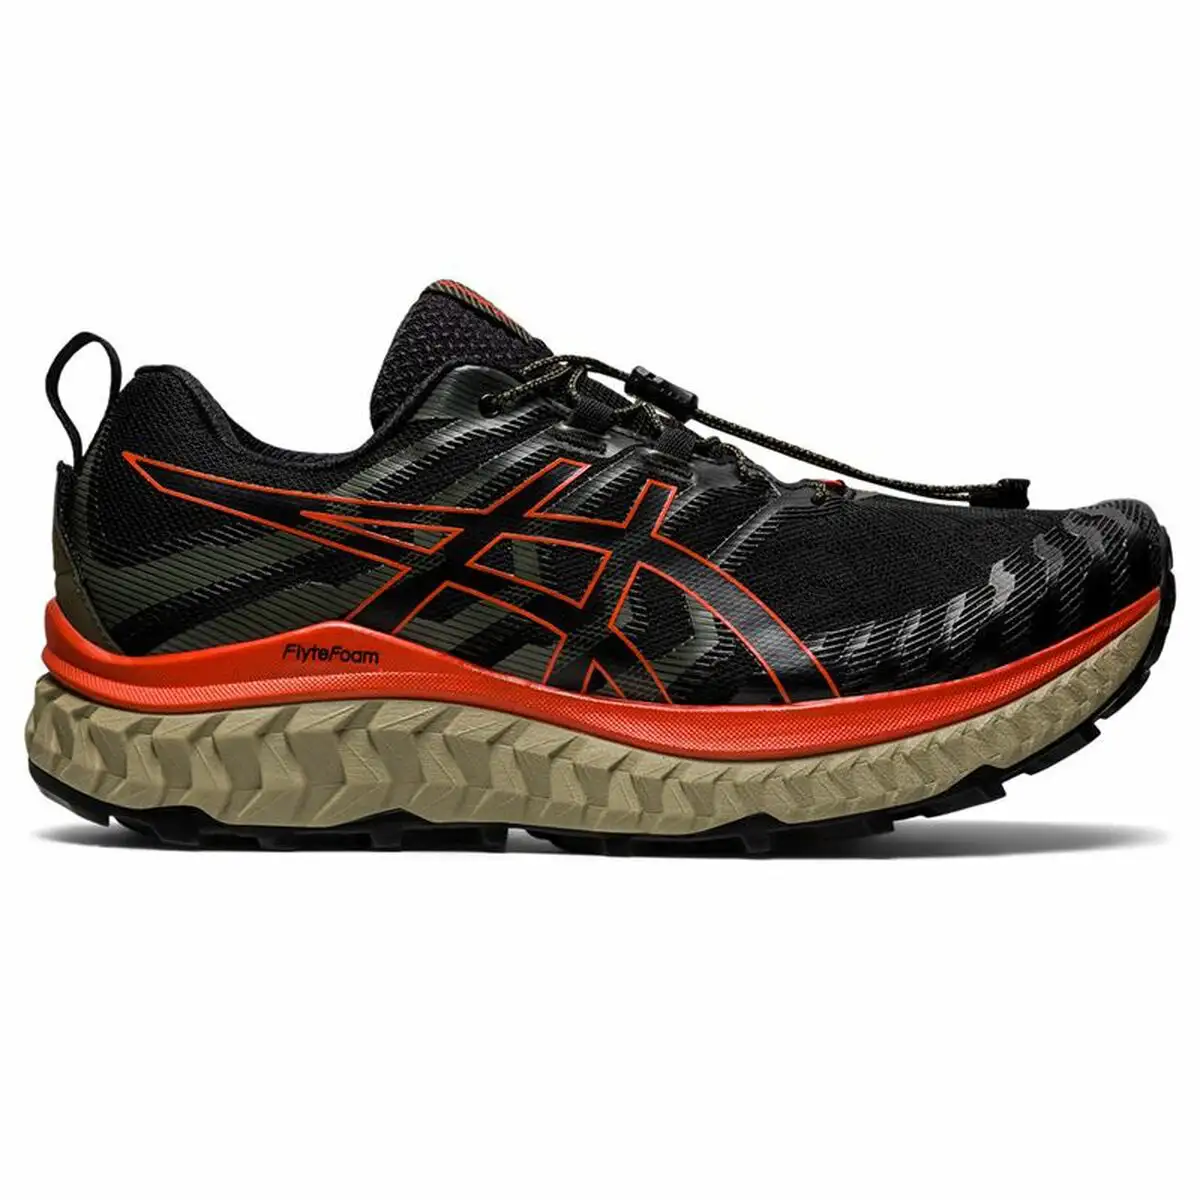 Chaussures de running pour adultes asics trabuco max noir homme_4861. Entrez dans l'Univers de DIAYTAR SENEGAL - Où Choisir est un Voyage. Explorez notre gamme diversifiée et trouvez des articles qui répondent à tous vos besoins et envies.